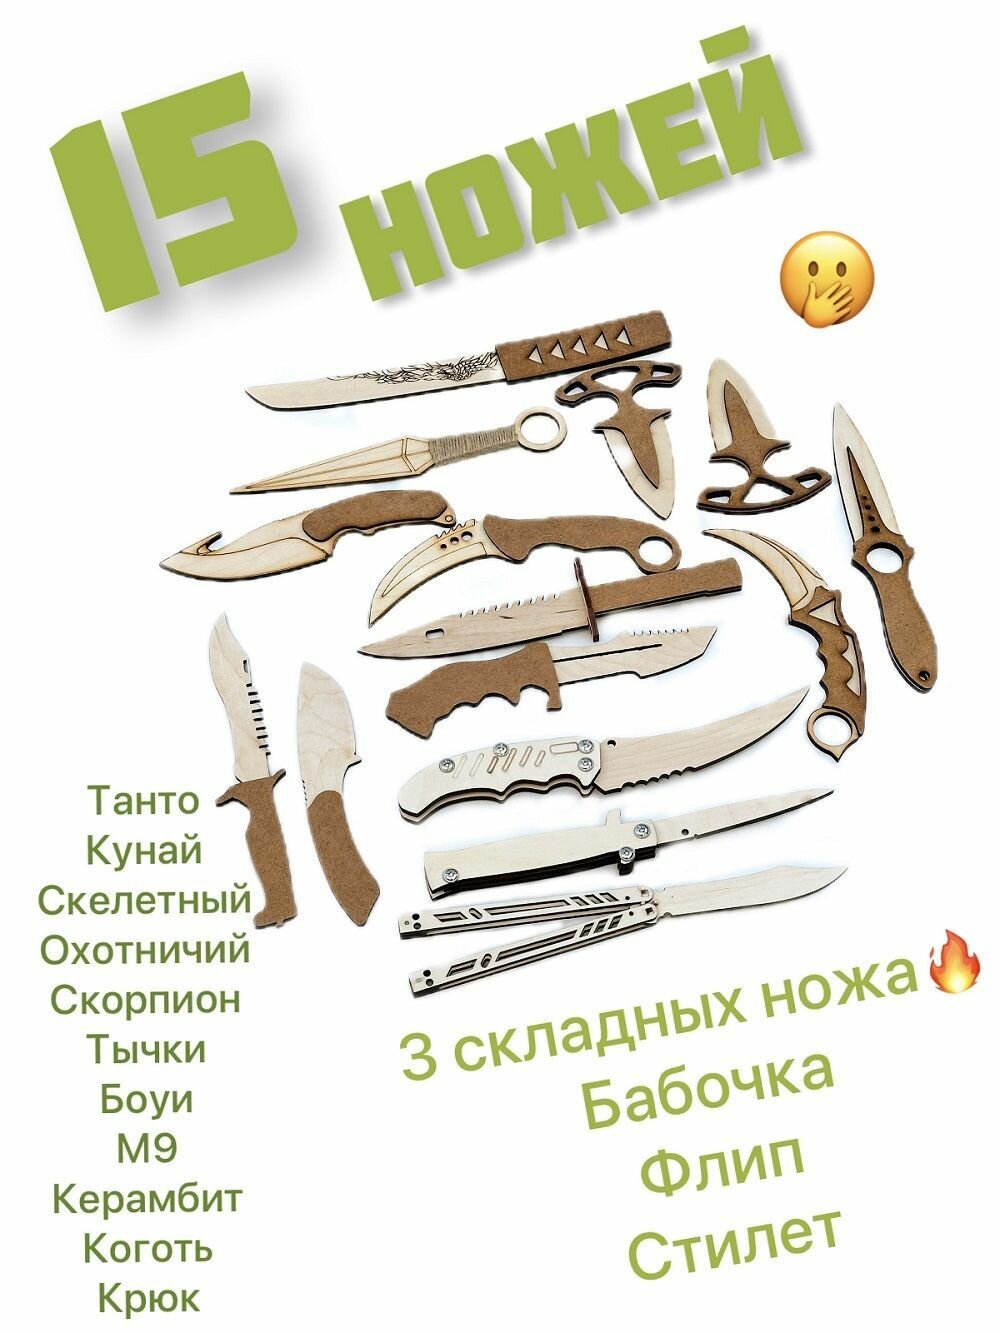 Деревянный нож 15 штук - нож бабочка, стилет, кунай, керамбит, штык-нож